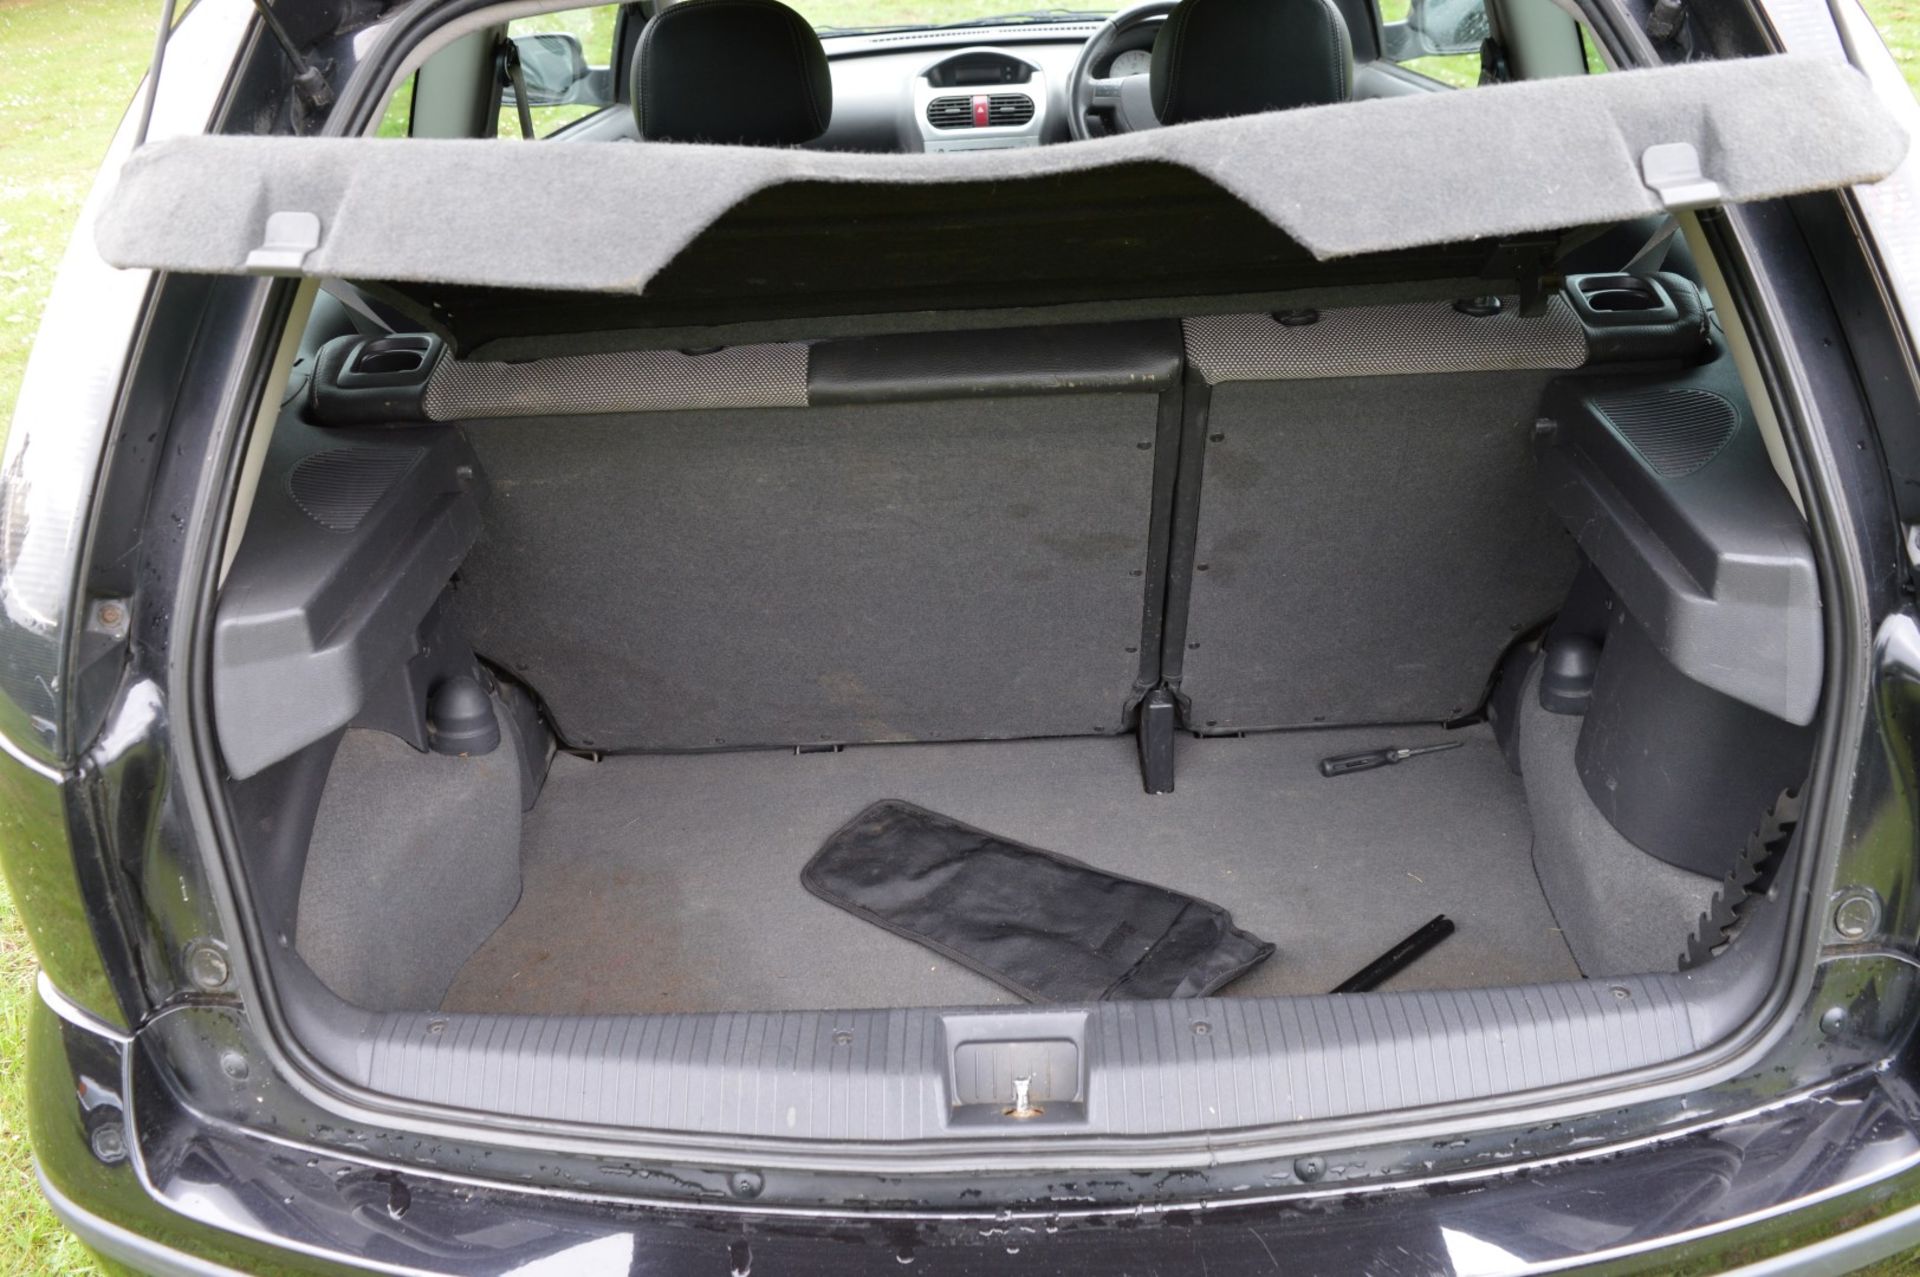 1 x Vauxhall Corsa SXI+ 3 Door Hatchback 1.2 - 2006 56 Plate - 78,000 Miles - MOT June 2018 - Image 31 of 36